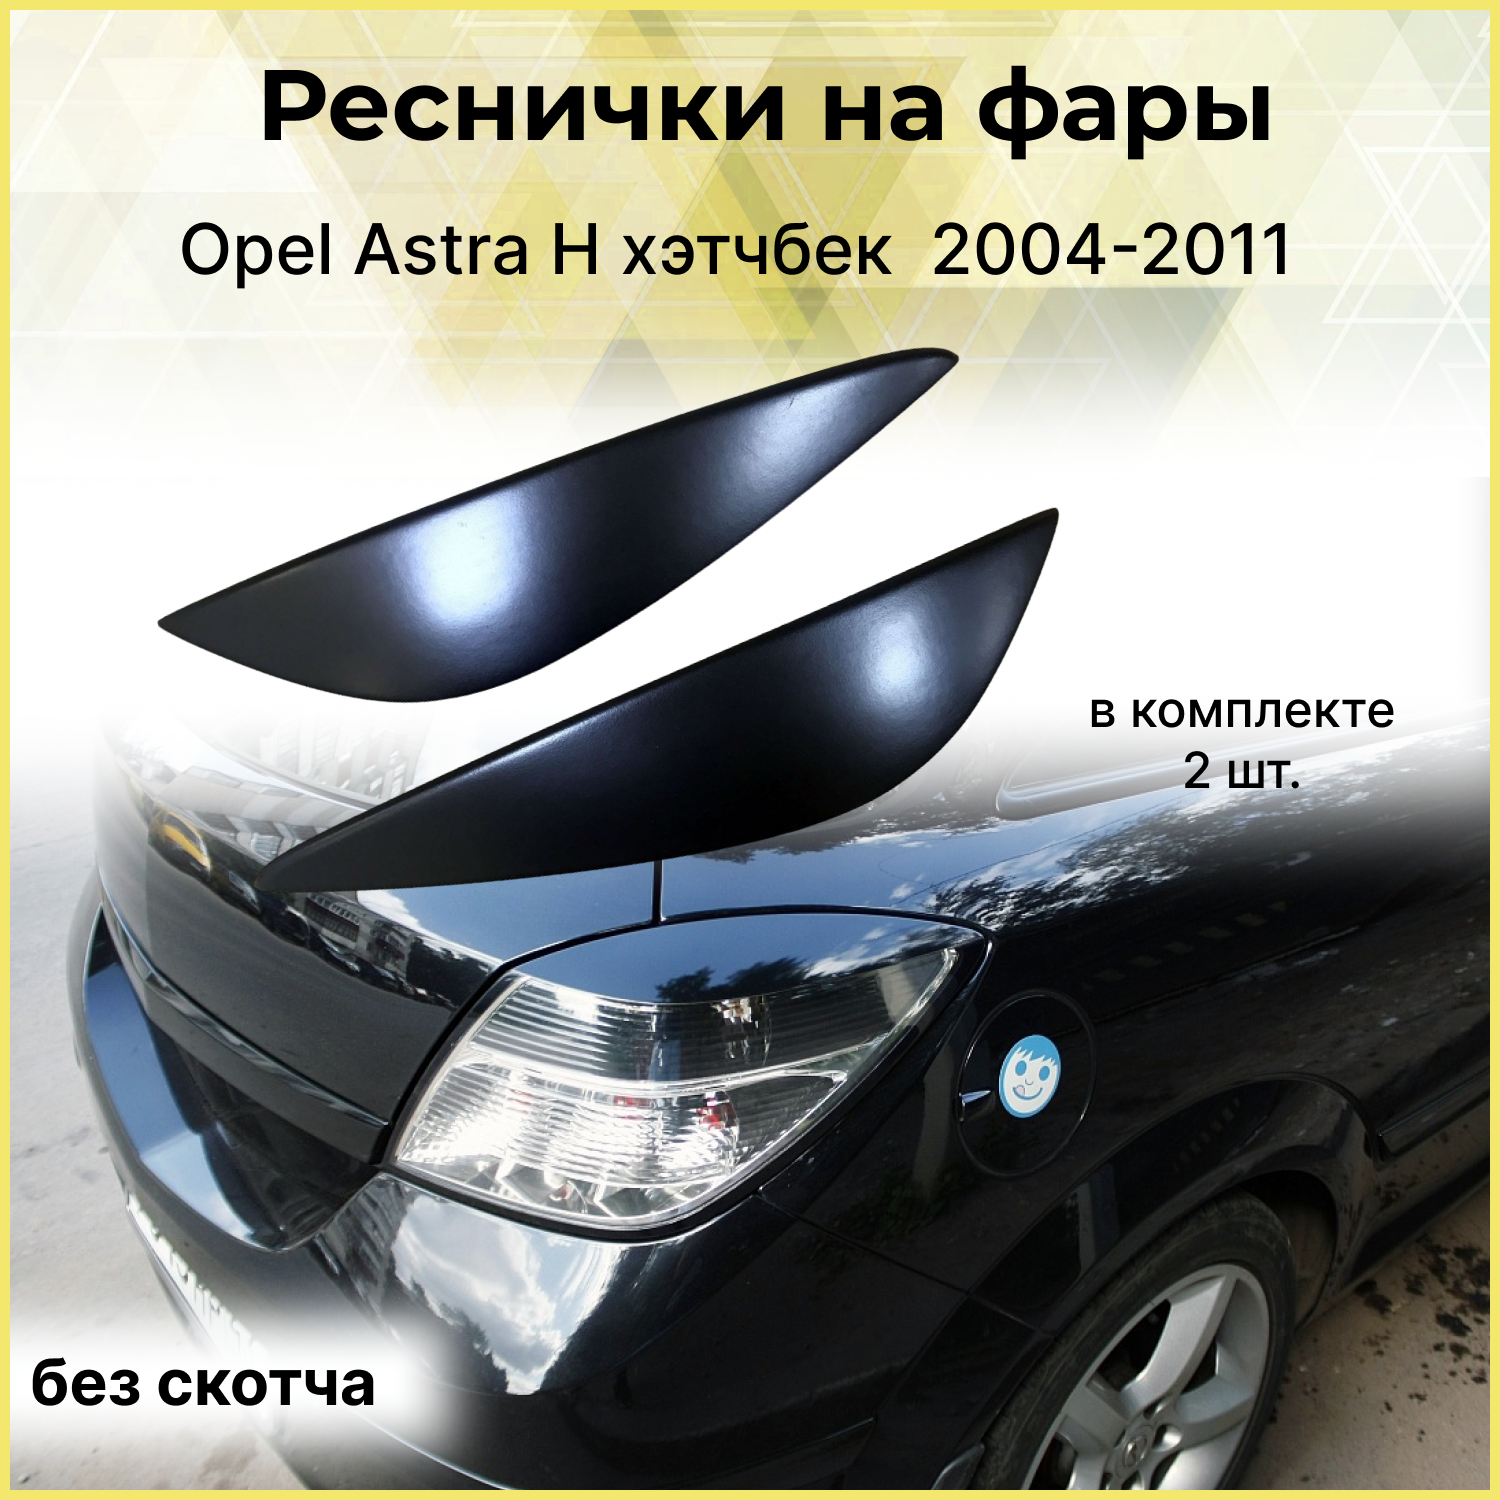 Реснички на фары для Opel Astra H хэтч. 3 двери. задние 2004-2011